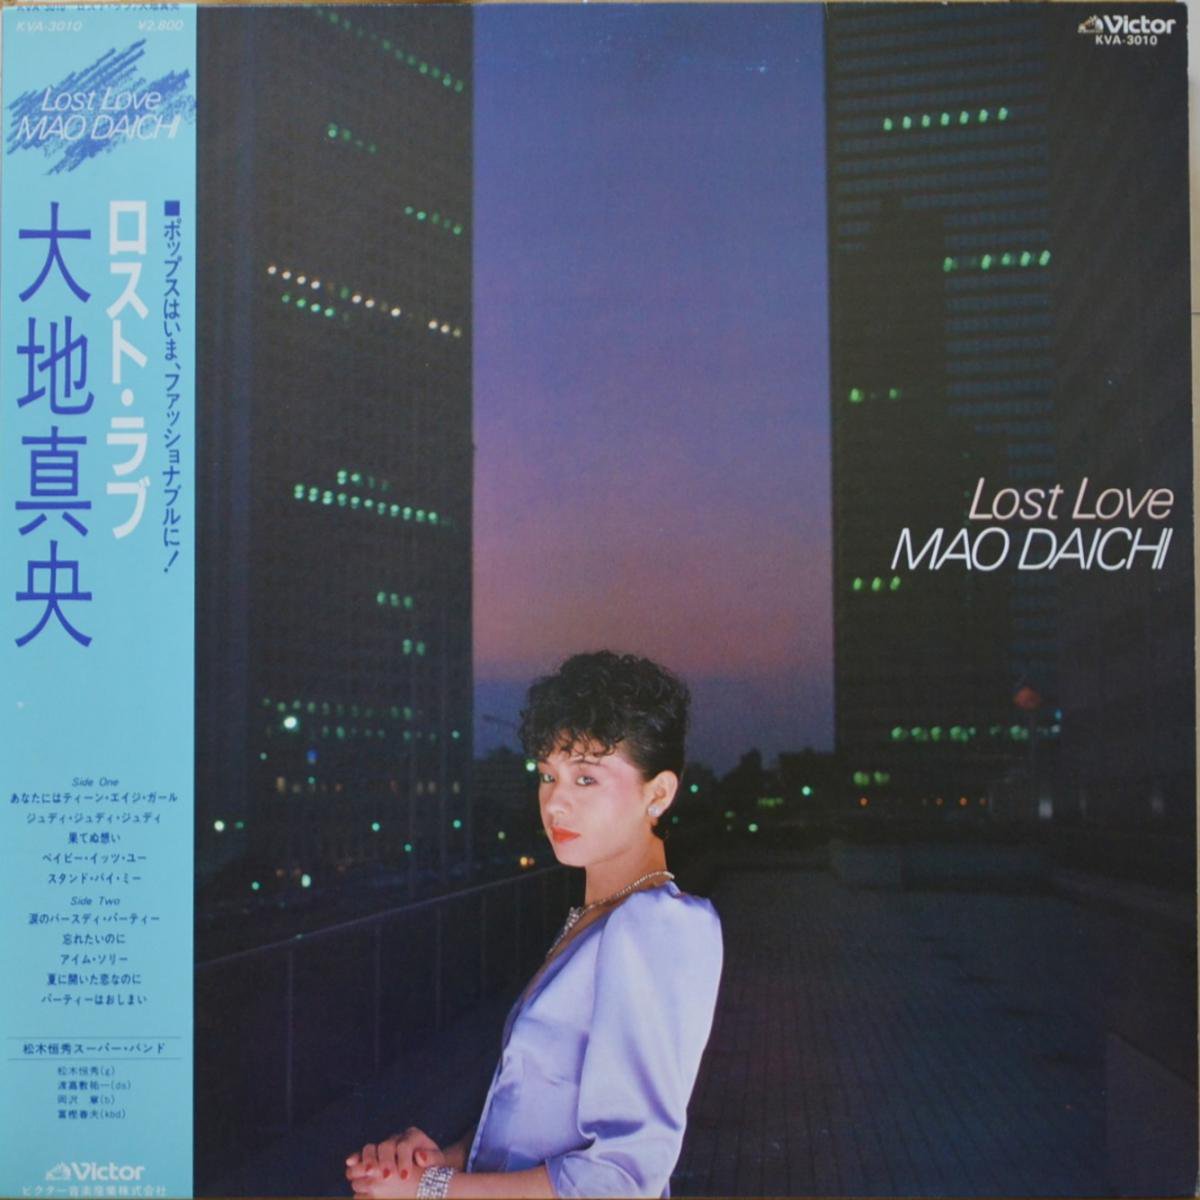 大地真央 MAO DAICHI / ロスト・ラブ LOST LOVE (LP) - HIP TANK RECORDS